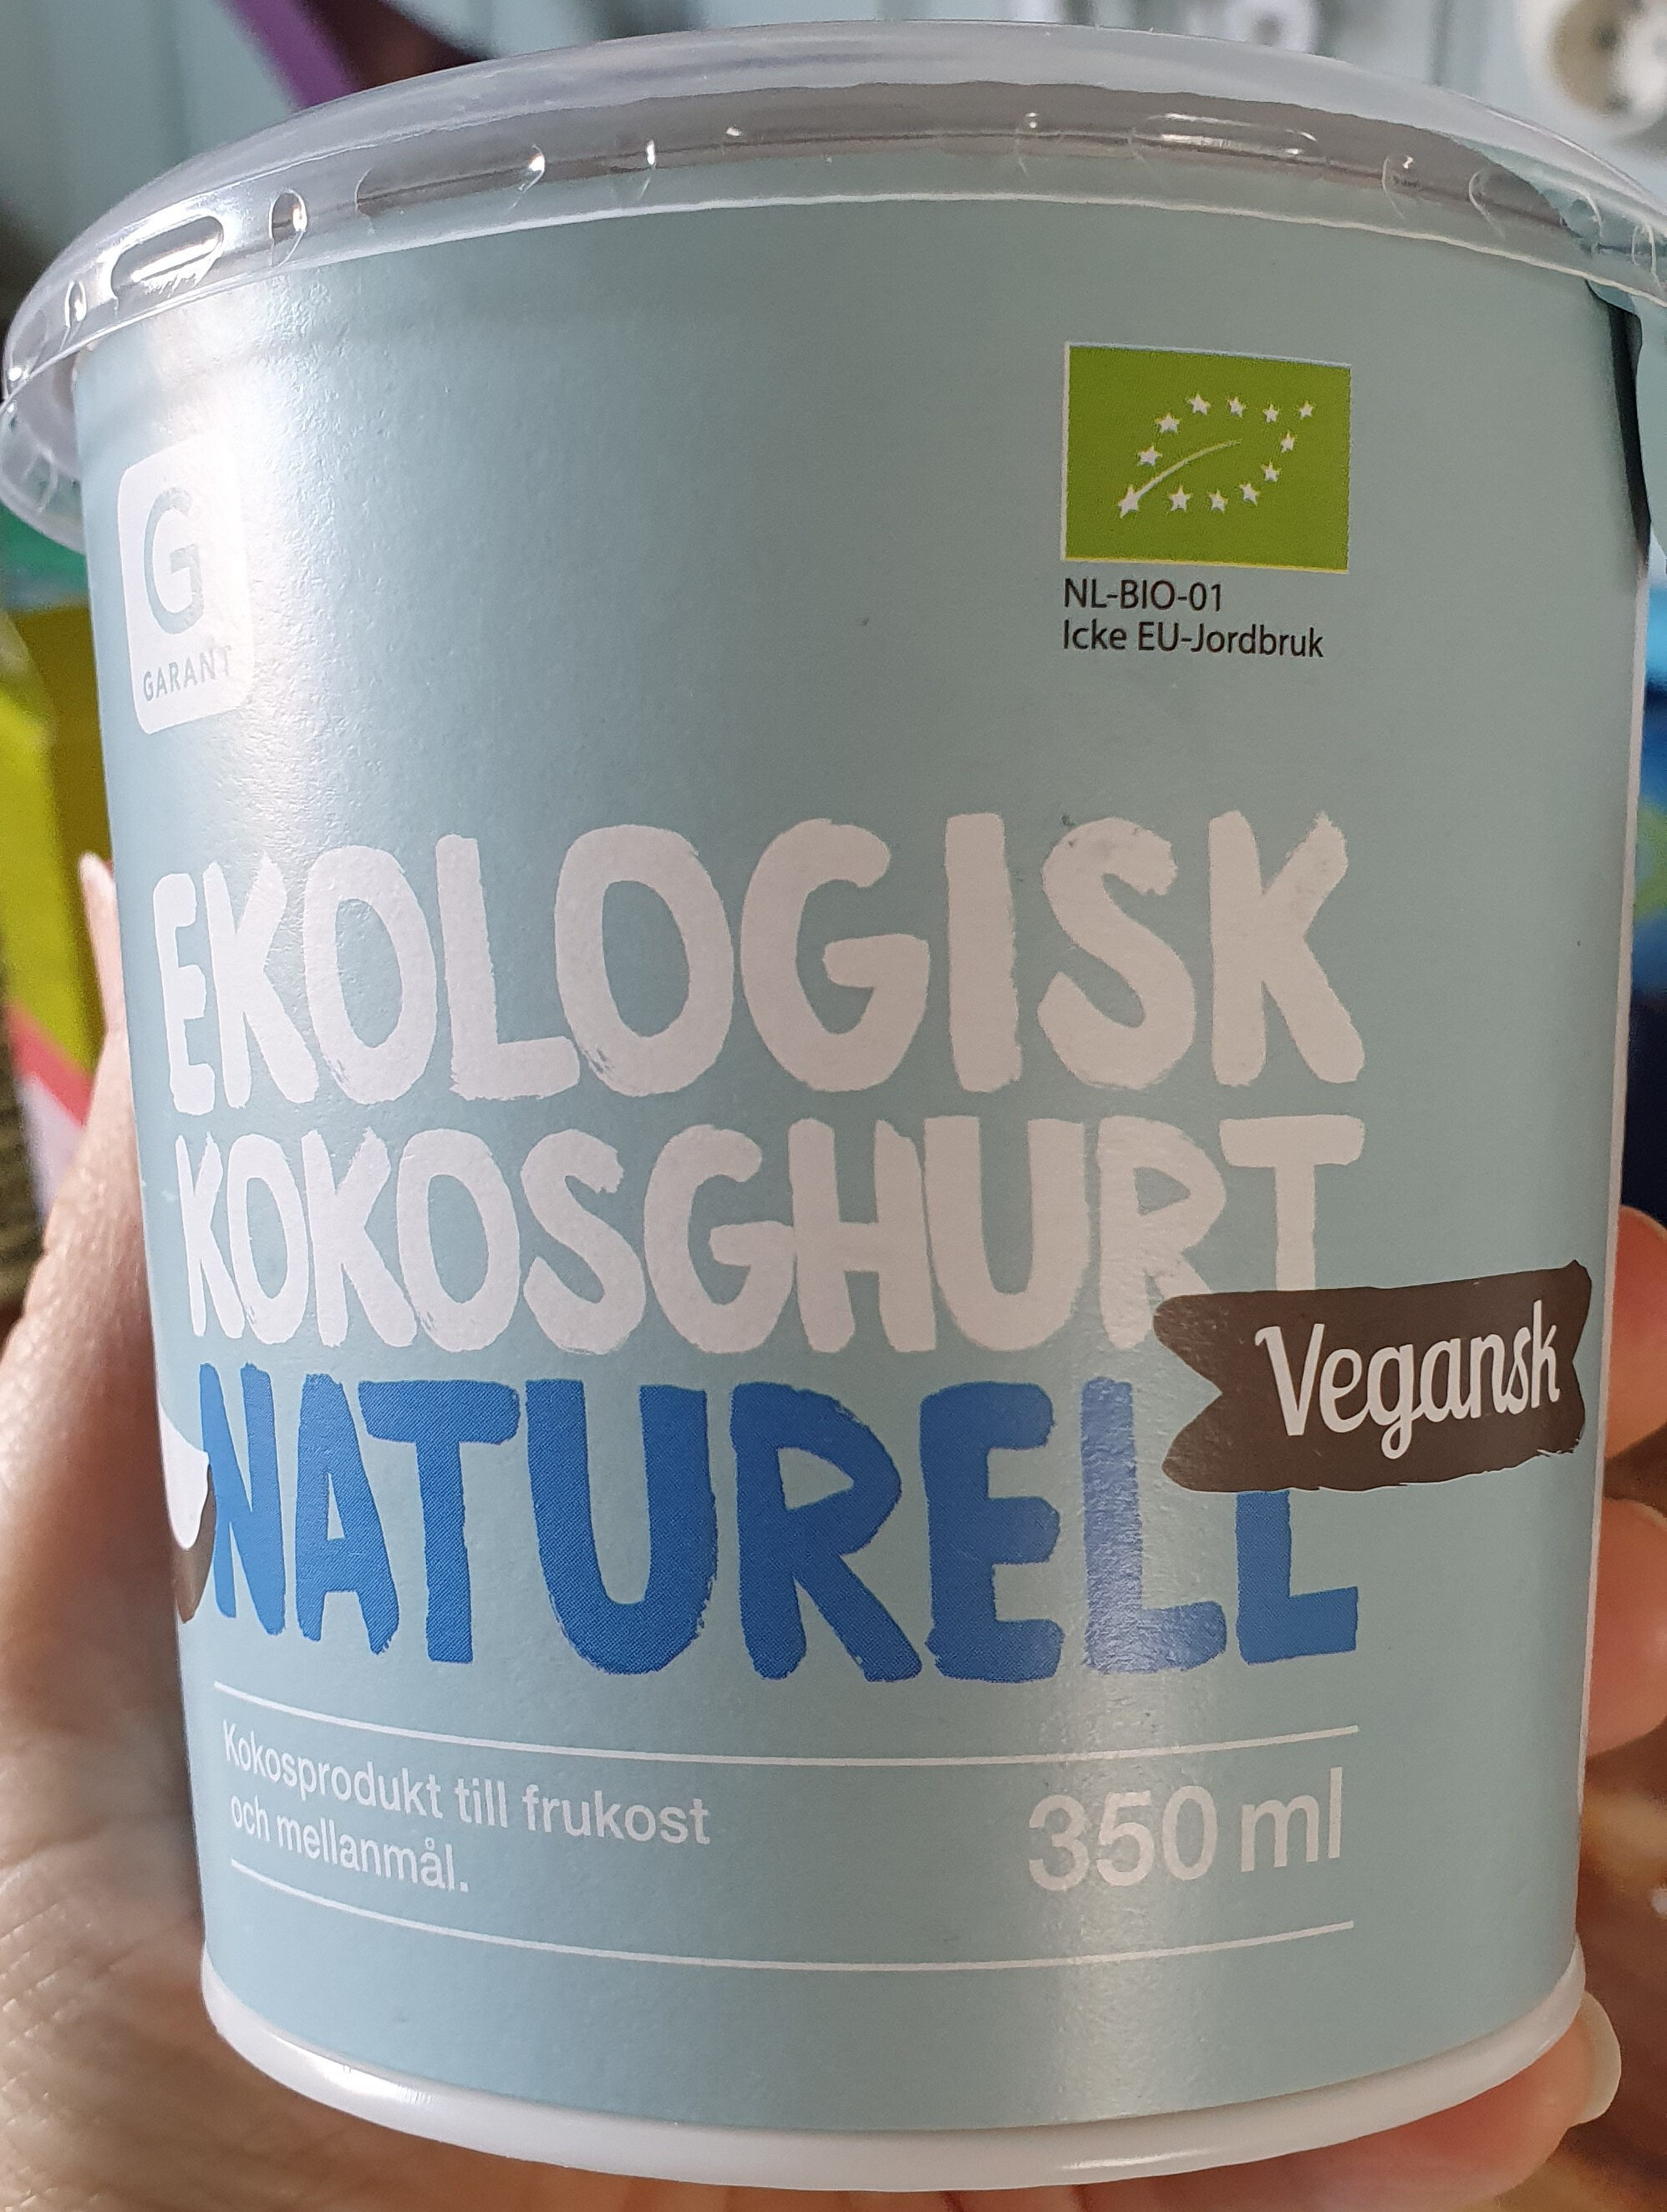 Ekologisk kokosghurt naturell - Produkt